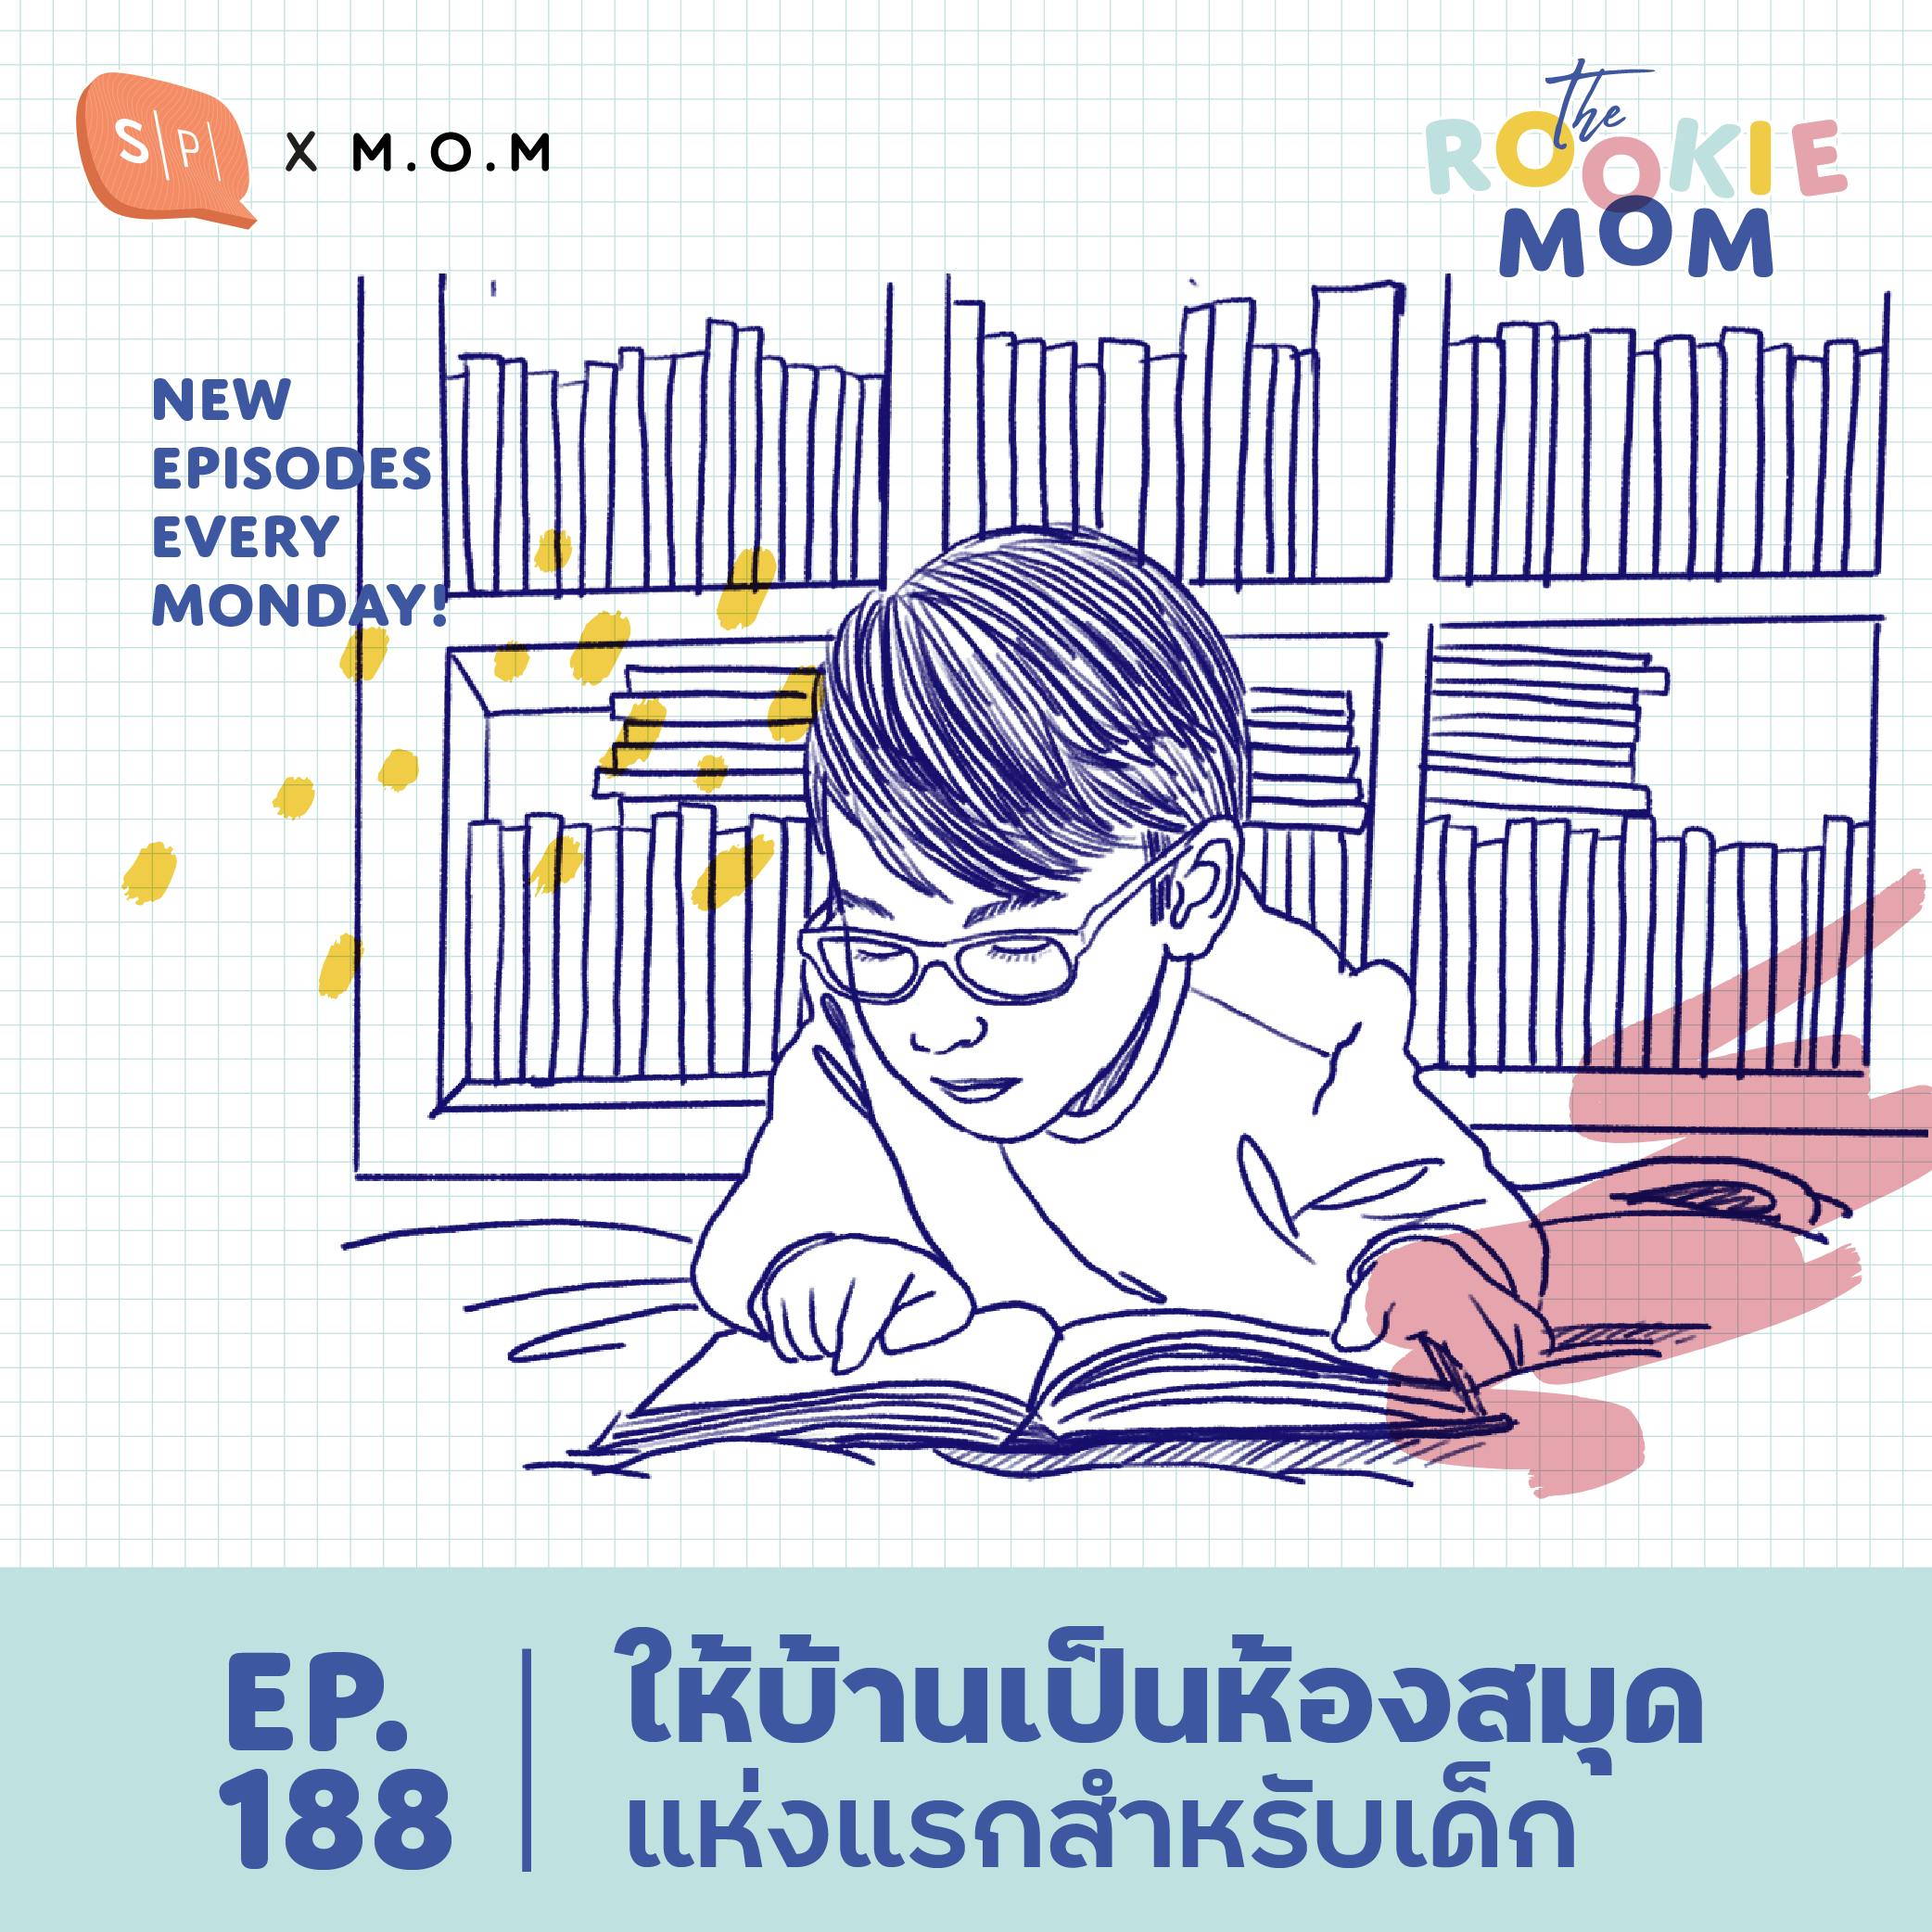 ให้บ้านเป็นห้องสมุดแห่งแรกสำหรับเด็ก | The Rookie Mom EP188